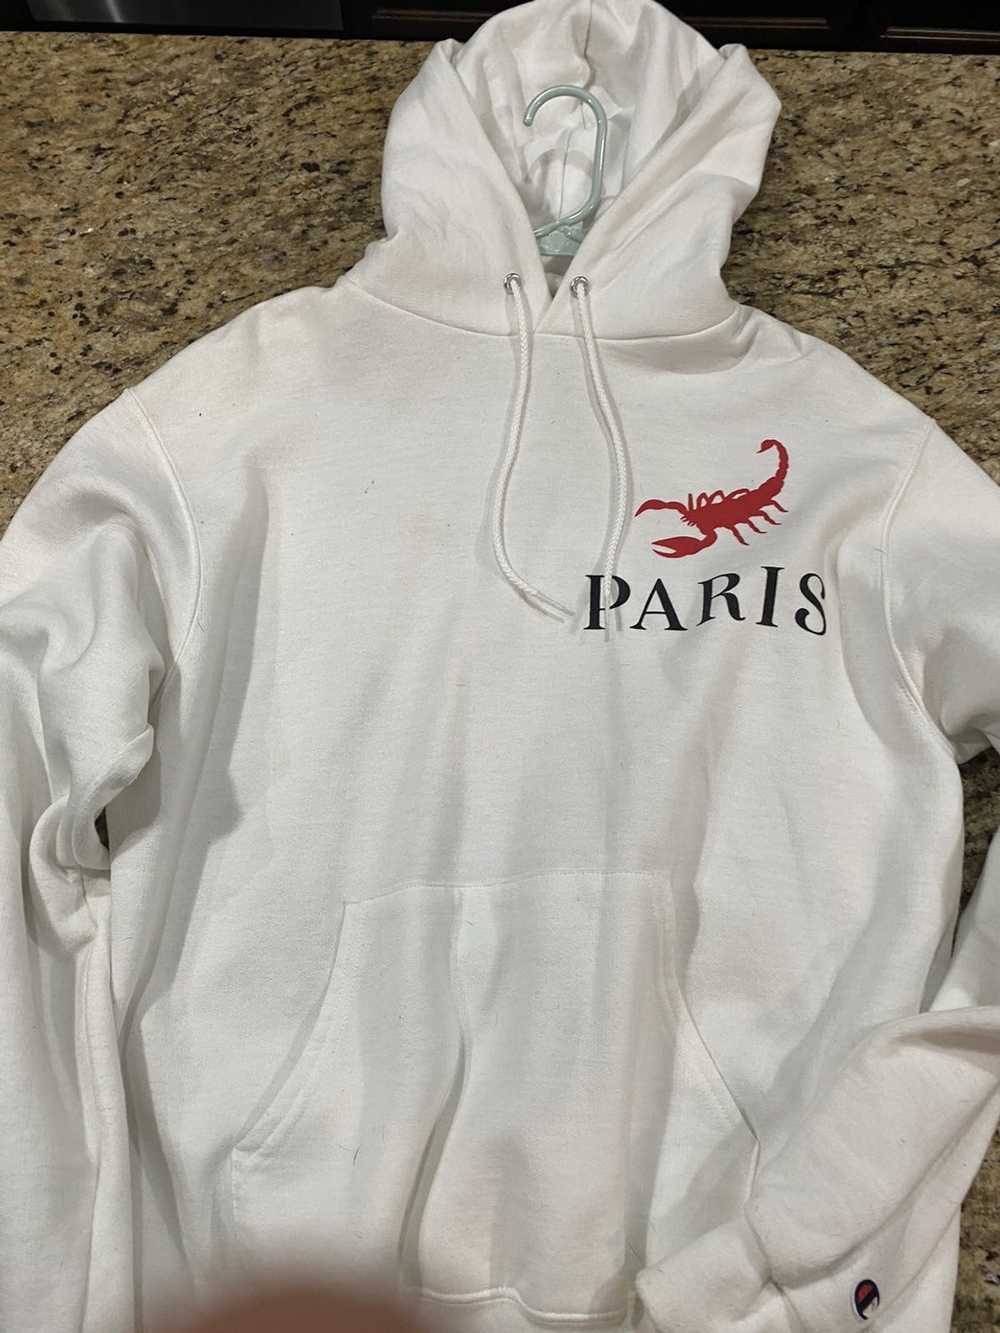 Pray For Paris Pray For Me Then Pray For Paris hoodie